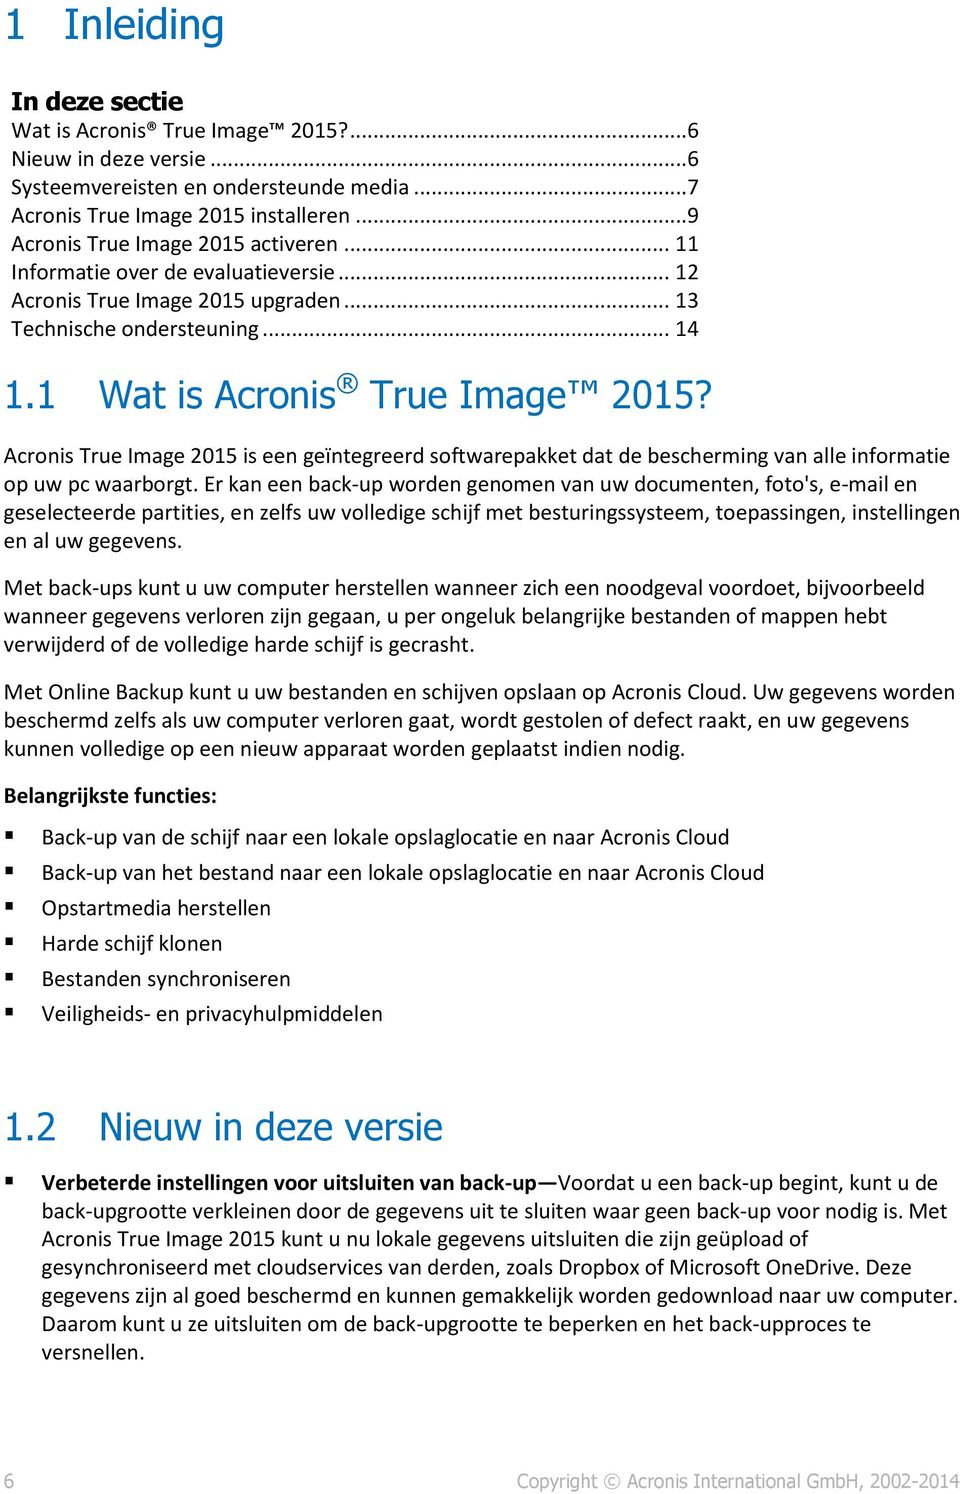 Acronis True Image 2015 is een geïntegreerd softwarepakket dat de bescherming van alle informatie op uw pc waarborgt.